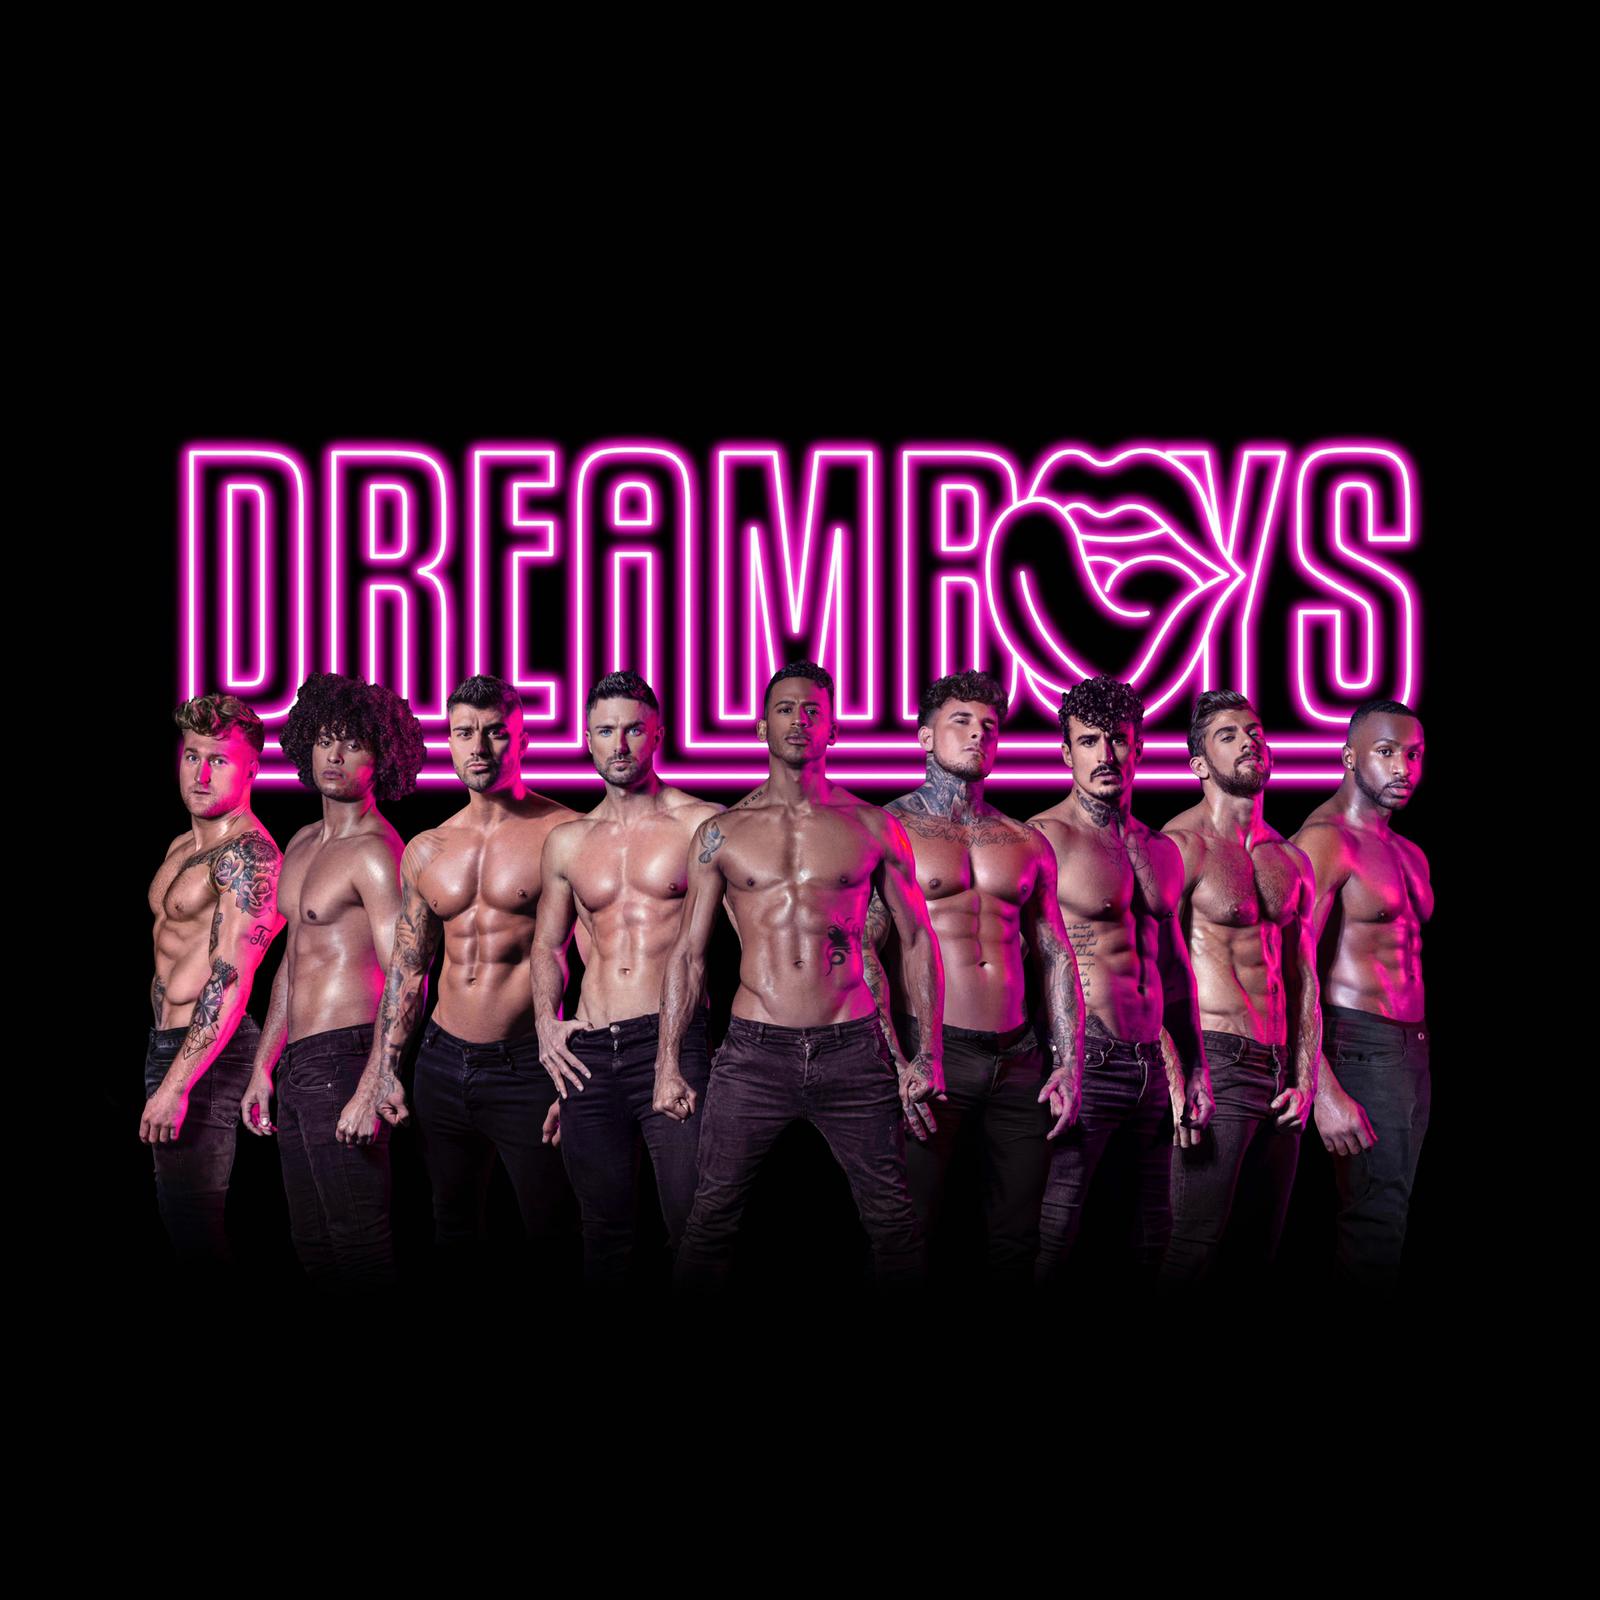 The Dreamboys